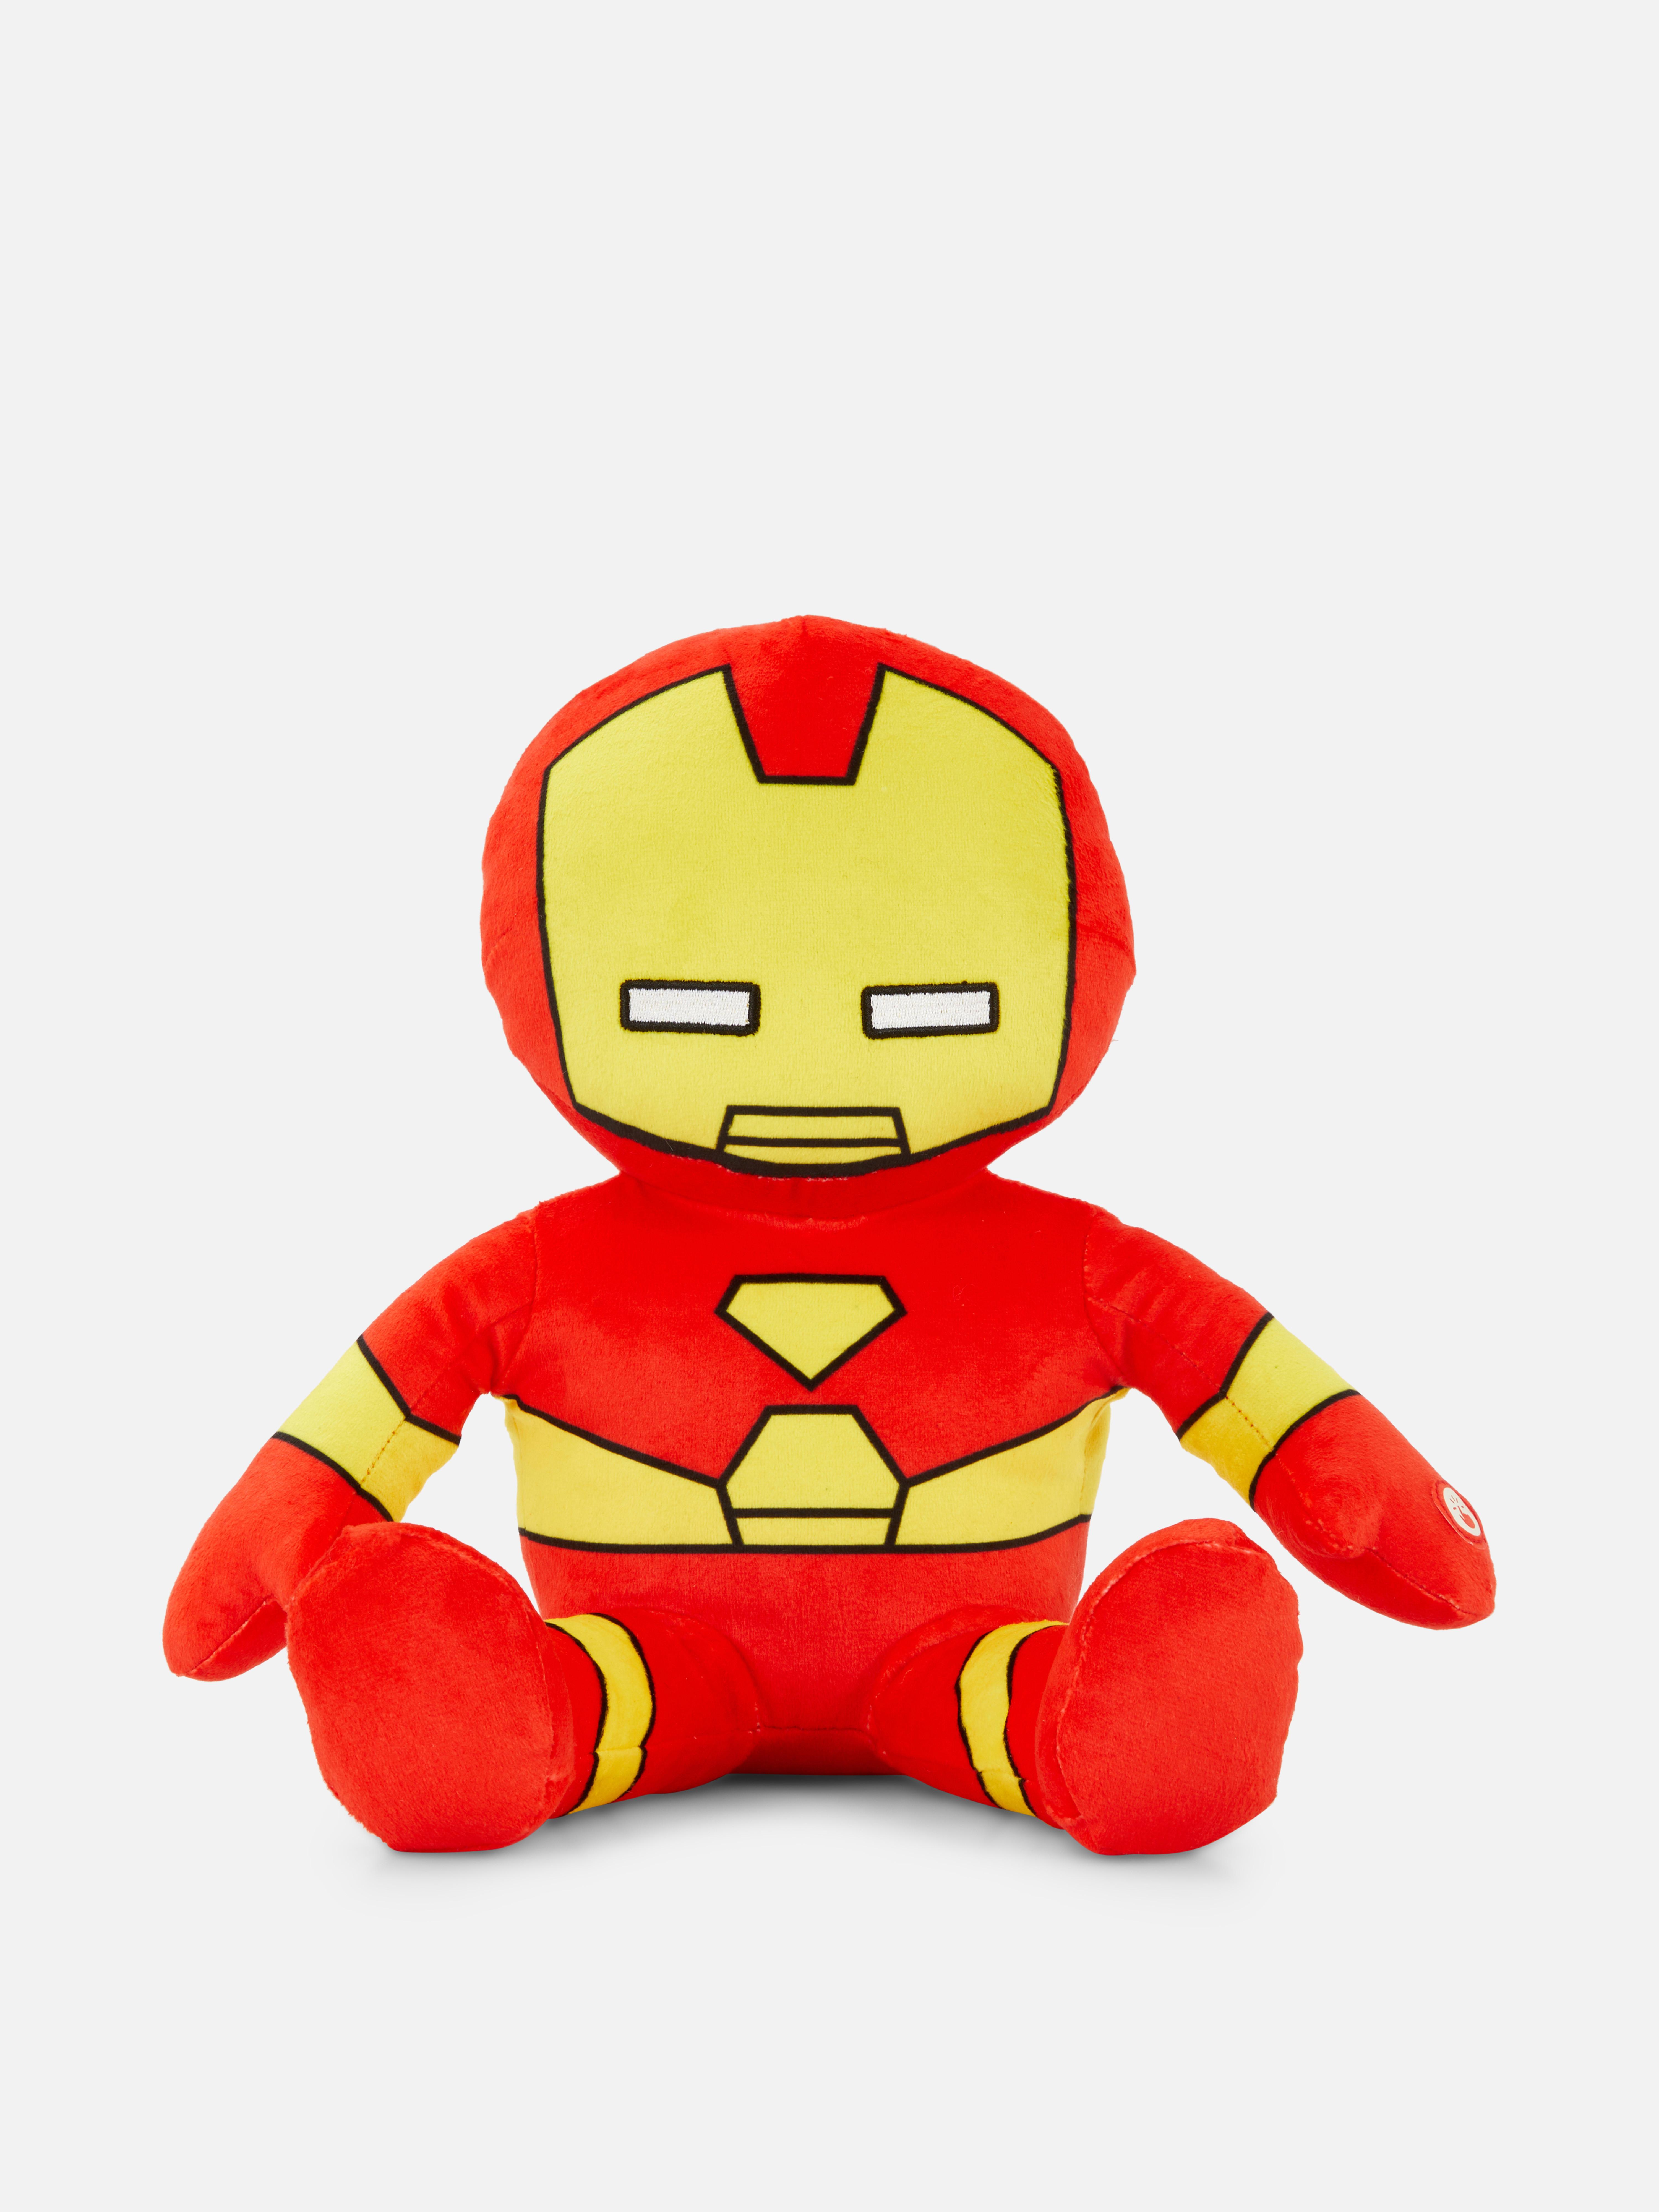 Marvel Iron Man Plush Toy Turquoise